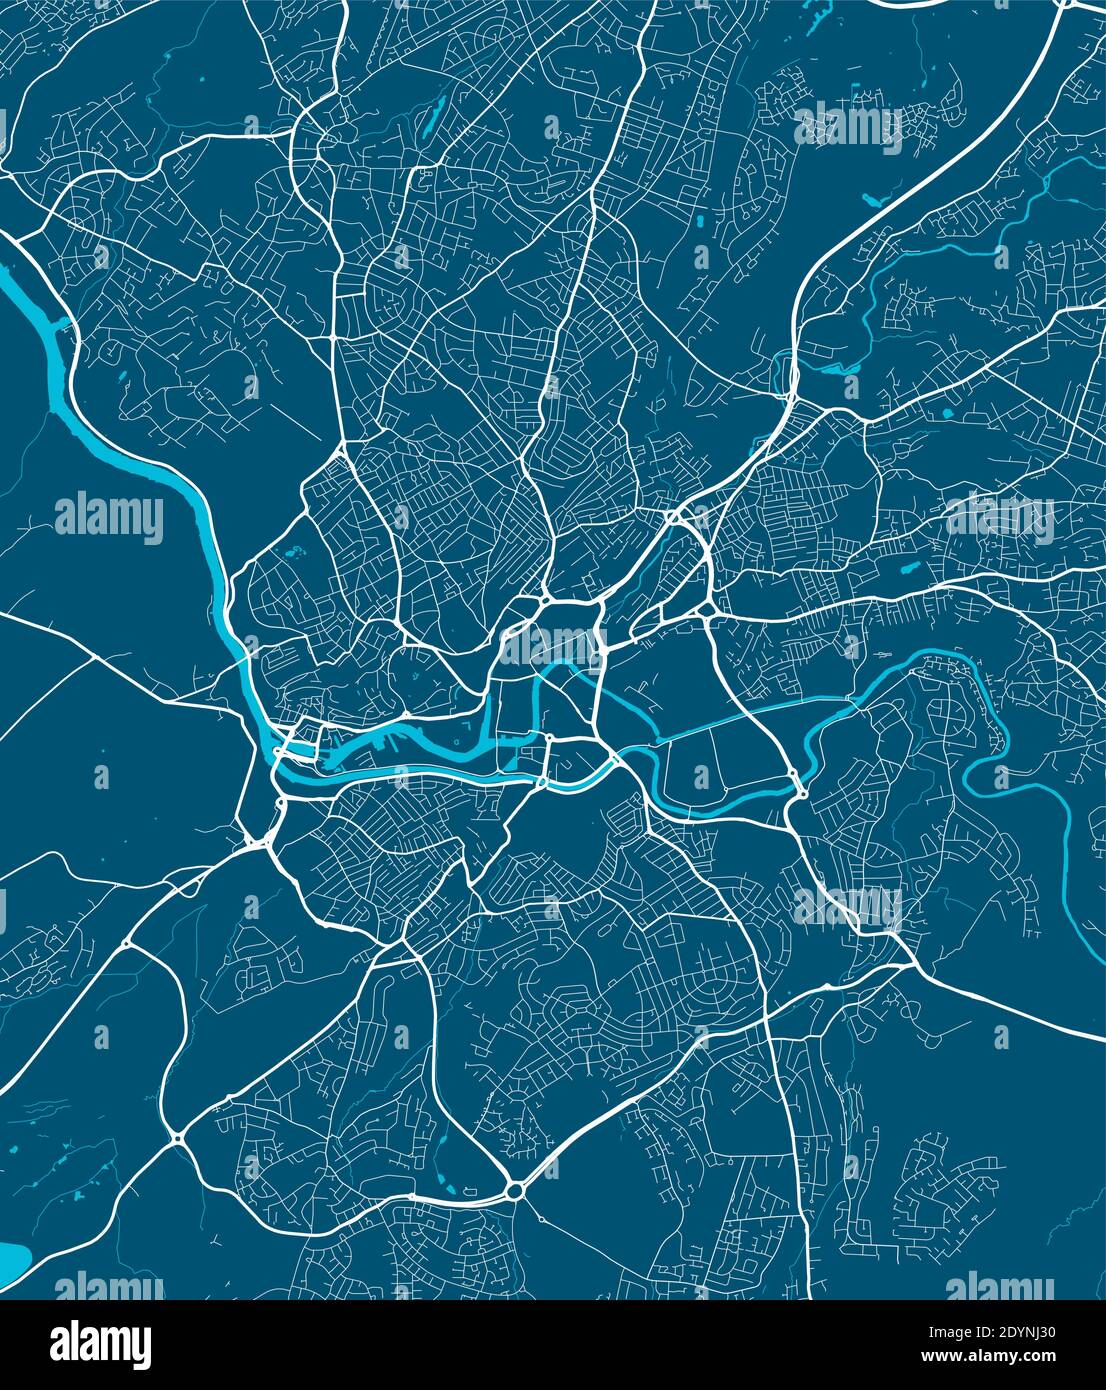 Detaillierte Karte des Verwaltungsgebiets von Bristol. Lizenzfreie Vektorgrafik. Stadtbild-Panorama. Dekorative Grafik Touristenkarte von Bristol terr Stock Vektor